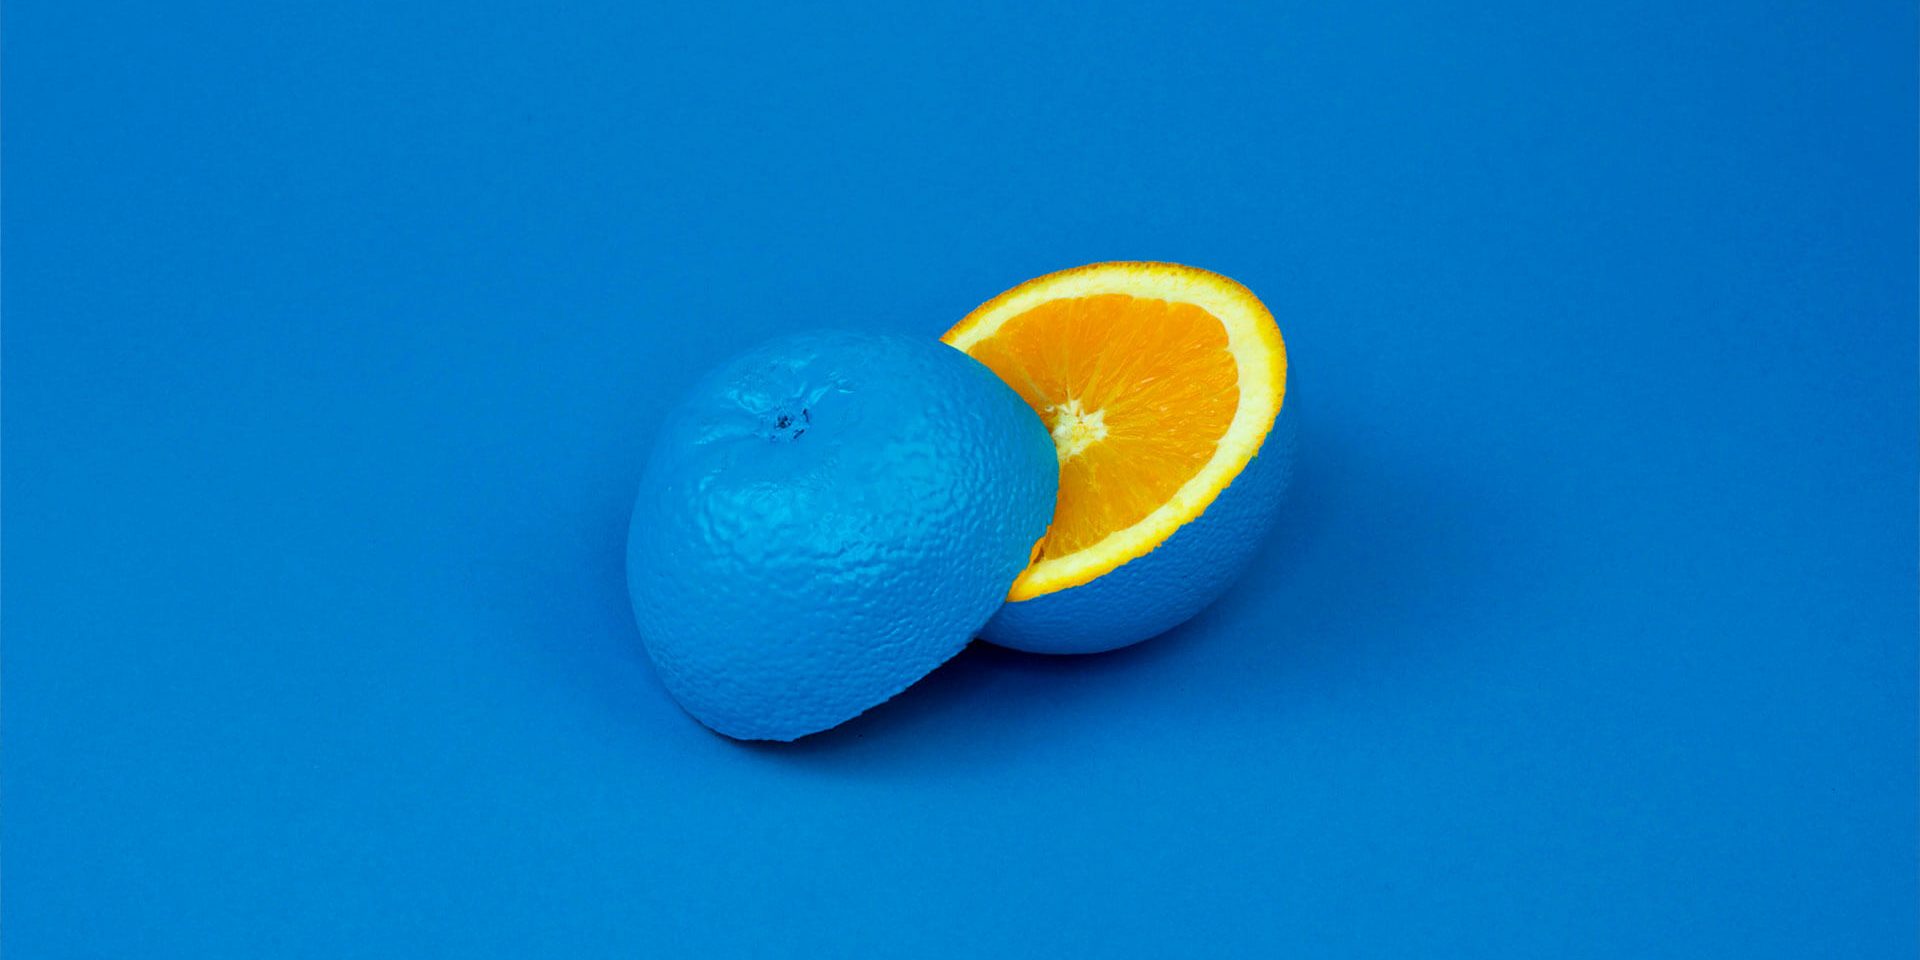 Ой, синий апельсин! Цветовые профили в «Фотошопе»: как починить, если все вдруг поломалось?